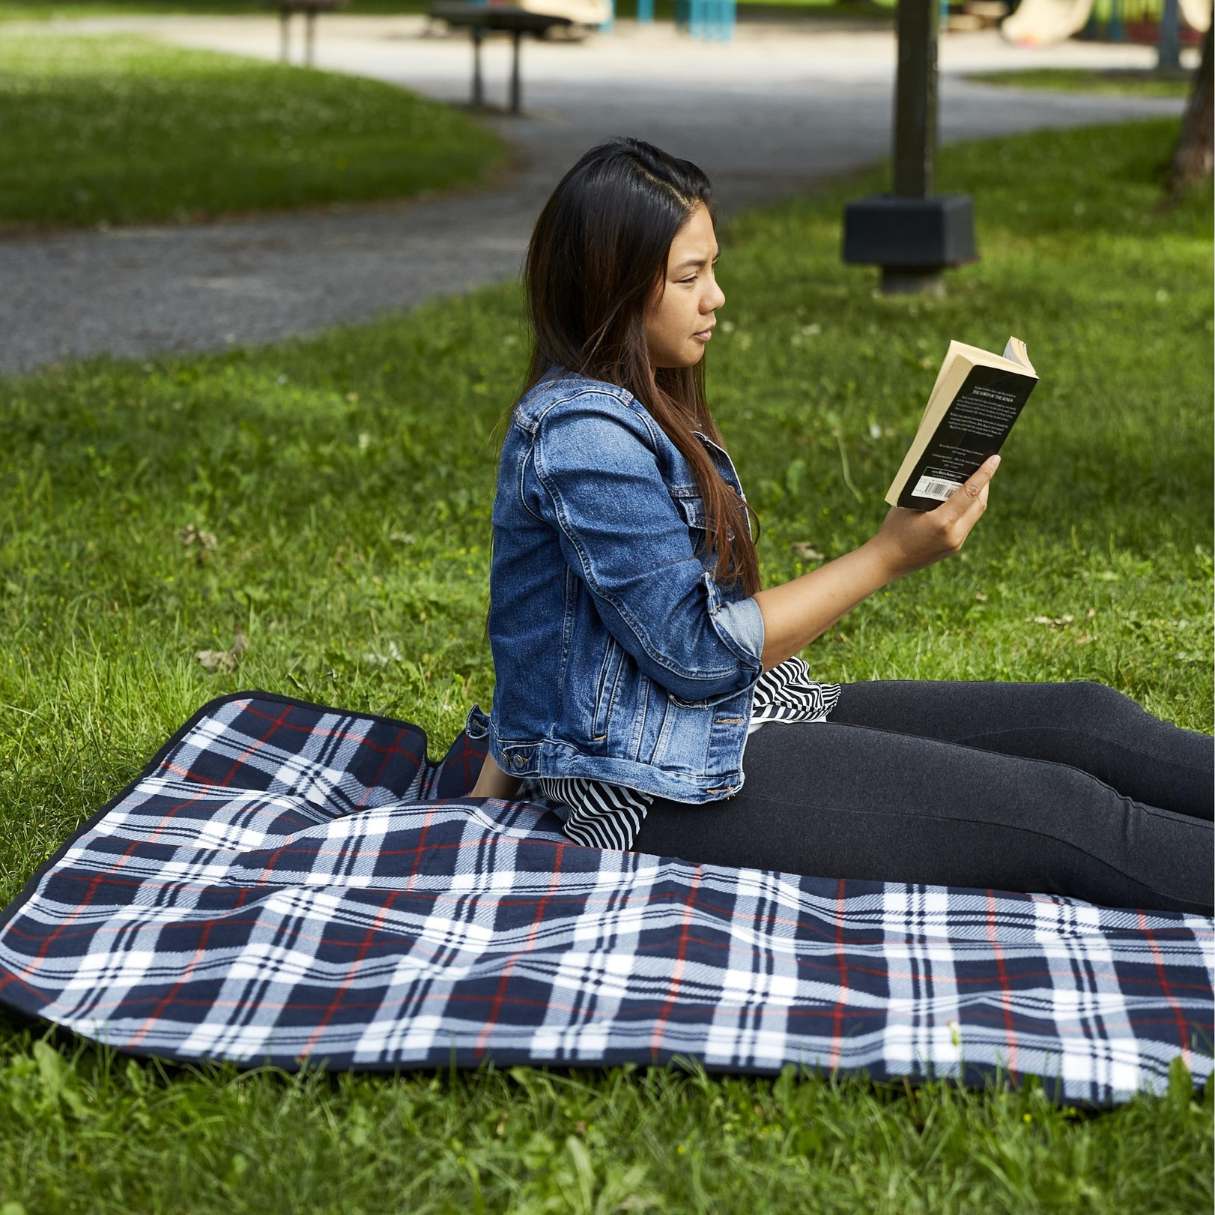 11 Best Outdoor Blanket for 2023